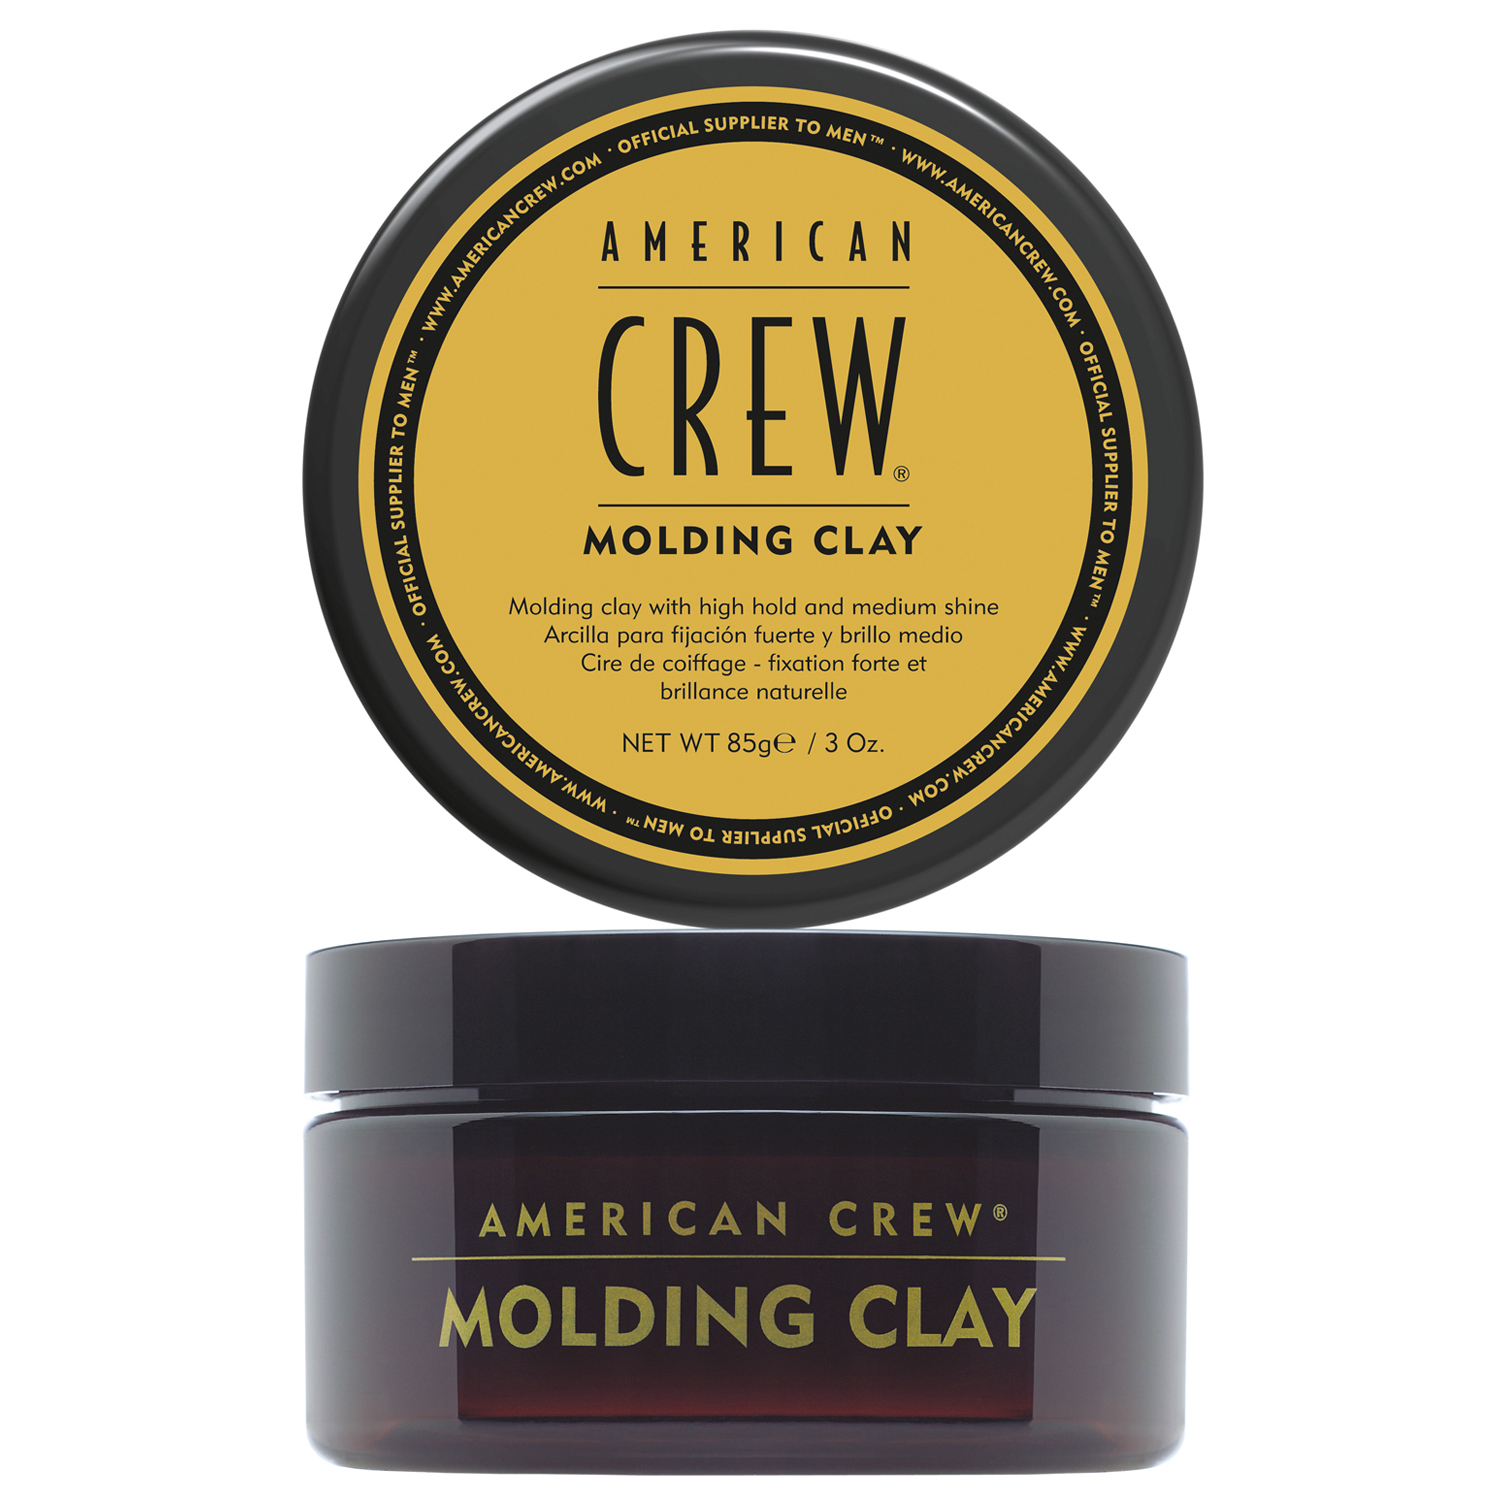 American Crew Моделирующая глина для укладки волос сильной фиксации Molding Clay, 85 г (American Crew, Styling) taft моделирующая глина molding clay для волос 75мл